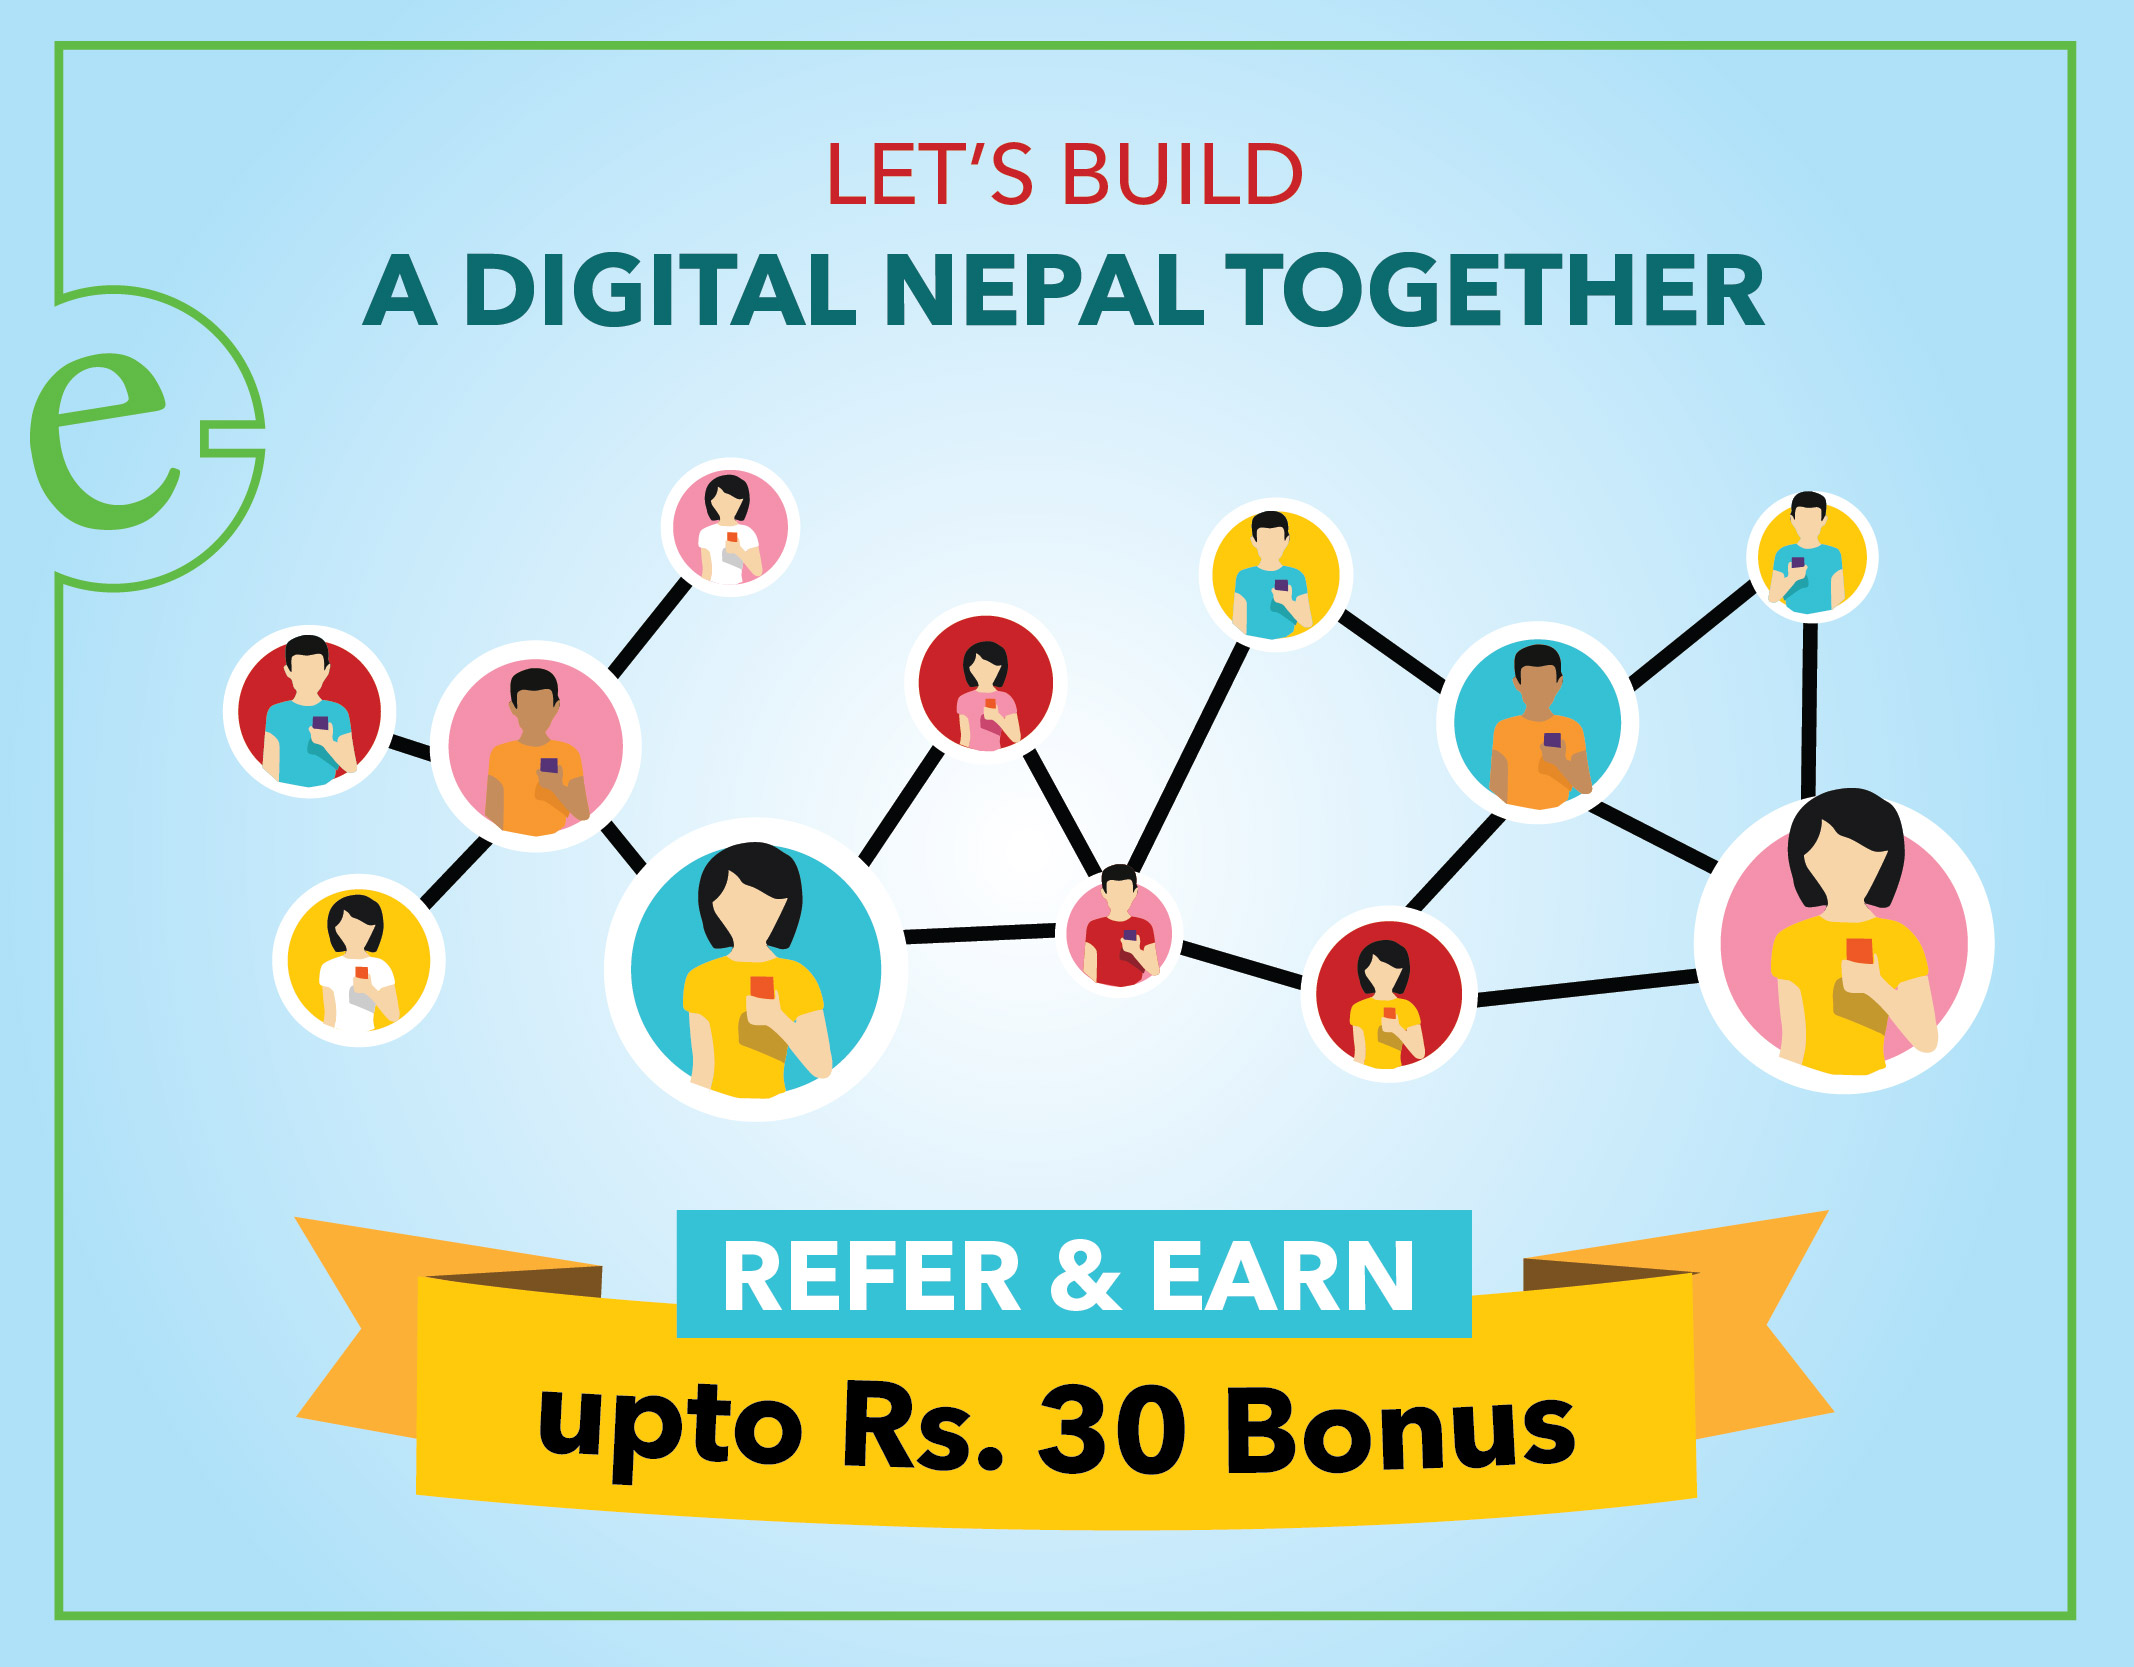 eSewa refer and earn together in making Digital Nepal